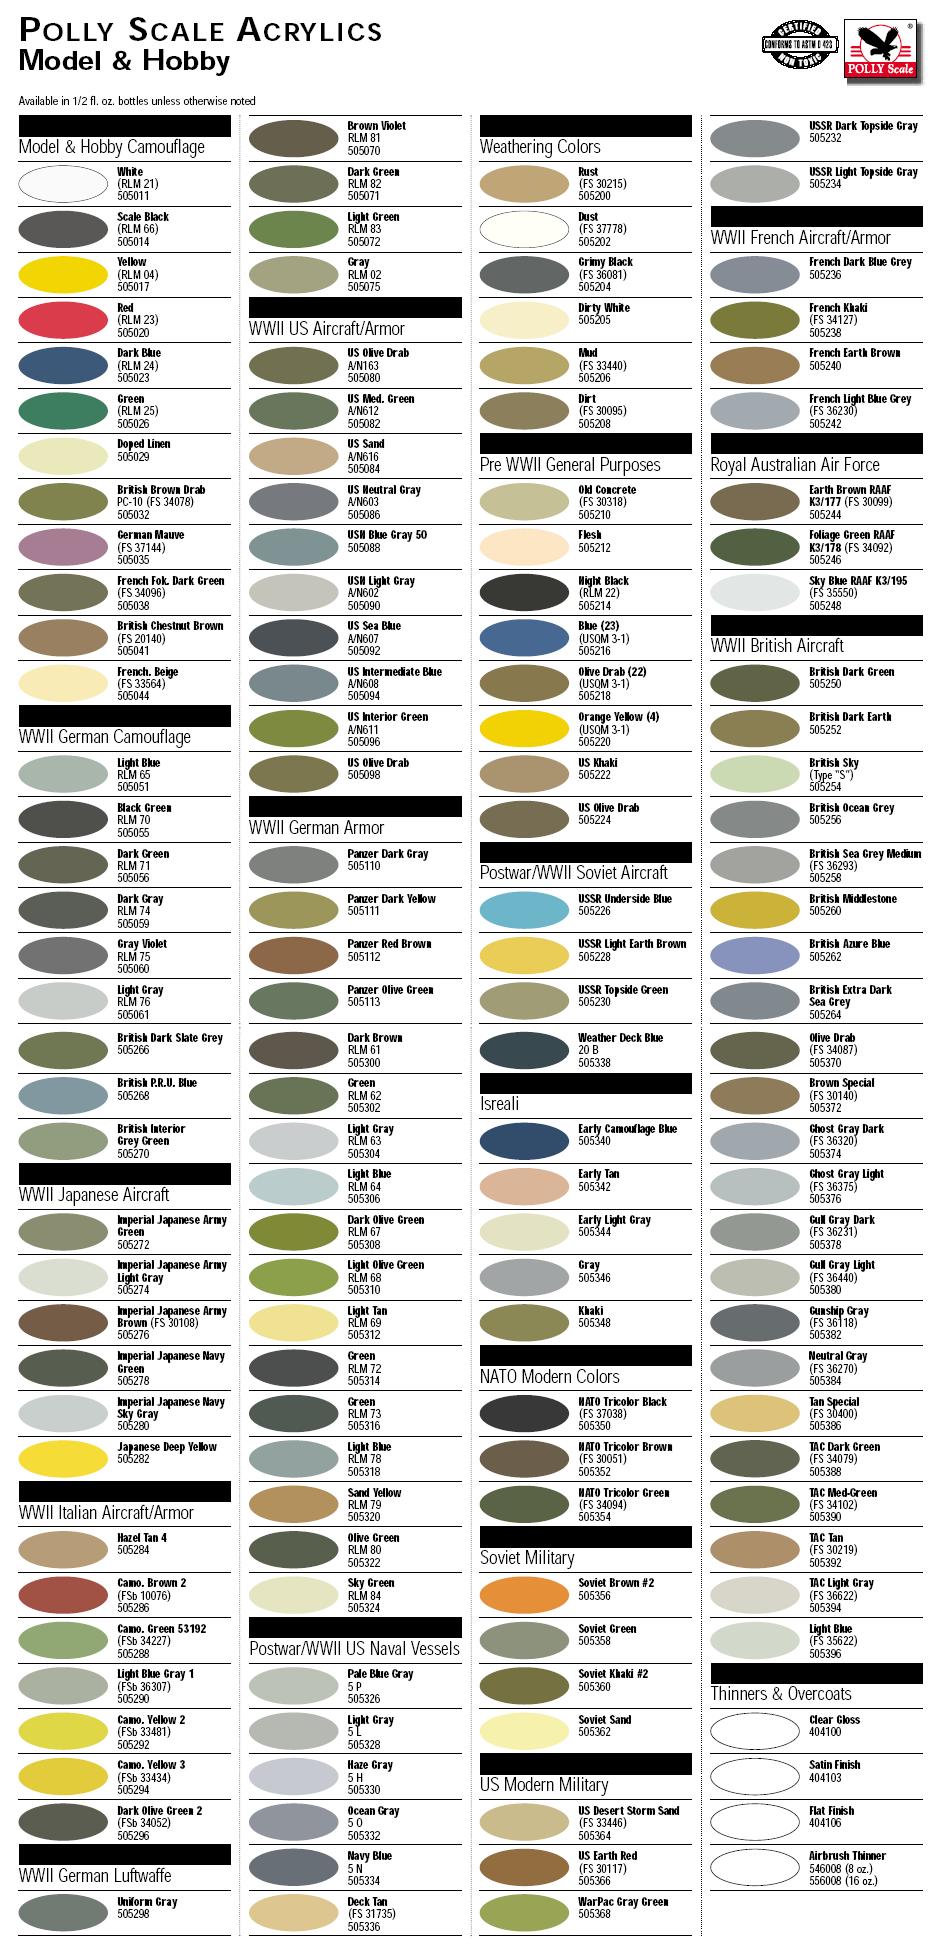 Scalecoat Paint Color Chart